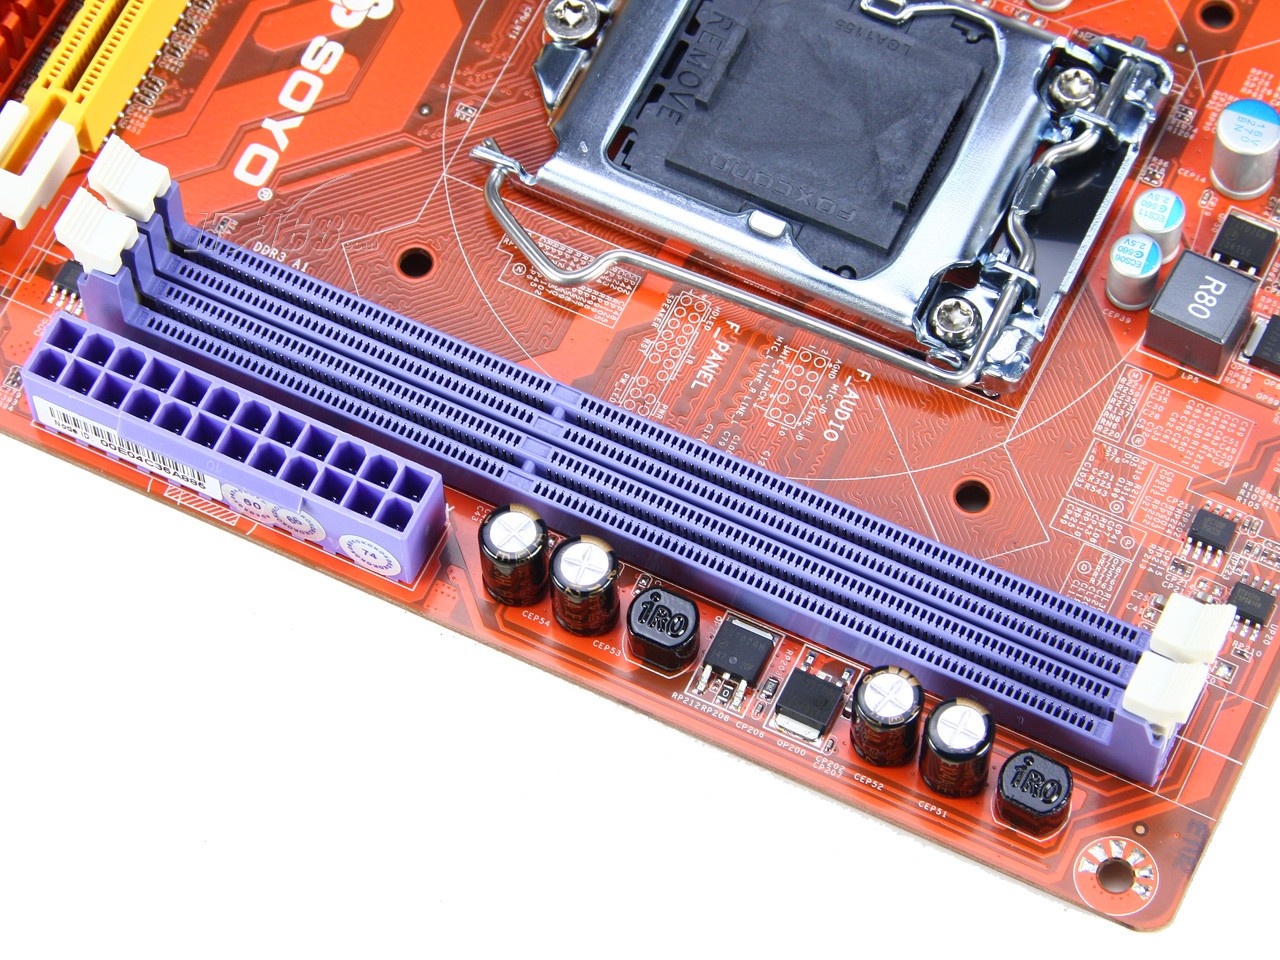 九代酷睿 DDR3 主板：虽略显陈旧，但经济实惠且实用性强  第2张